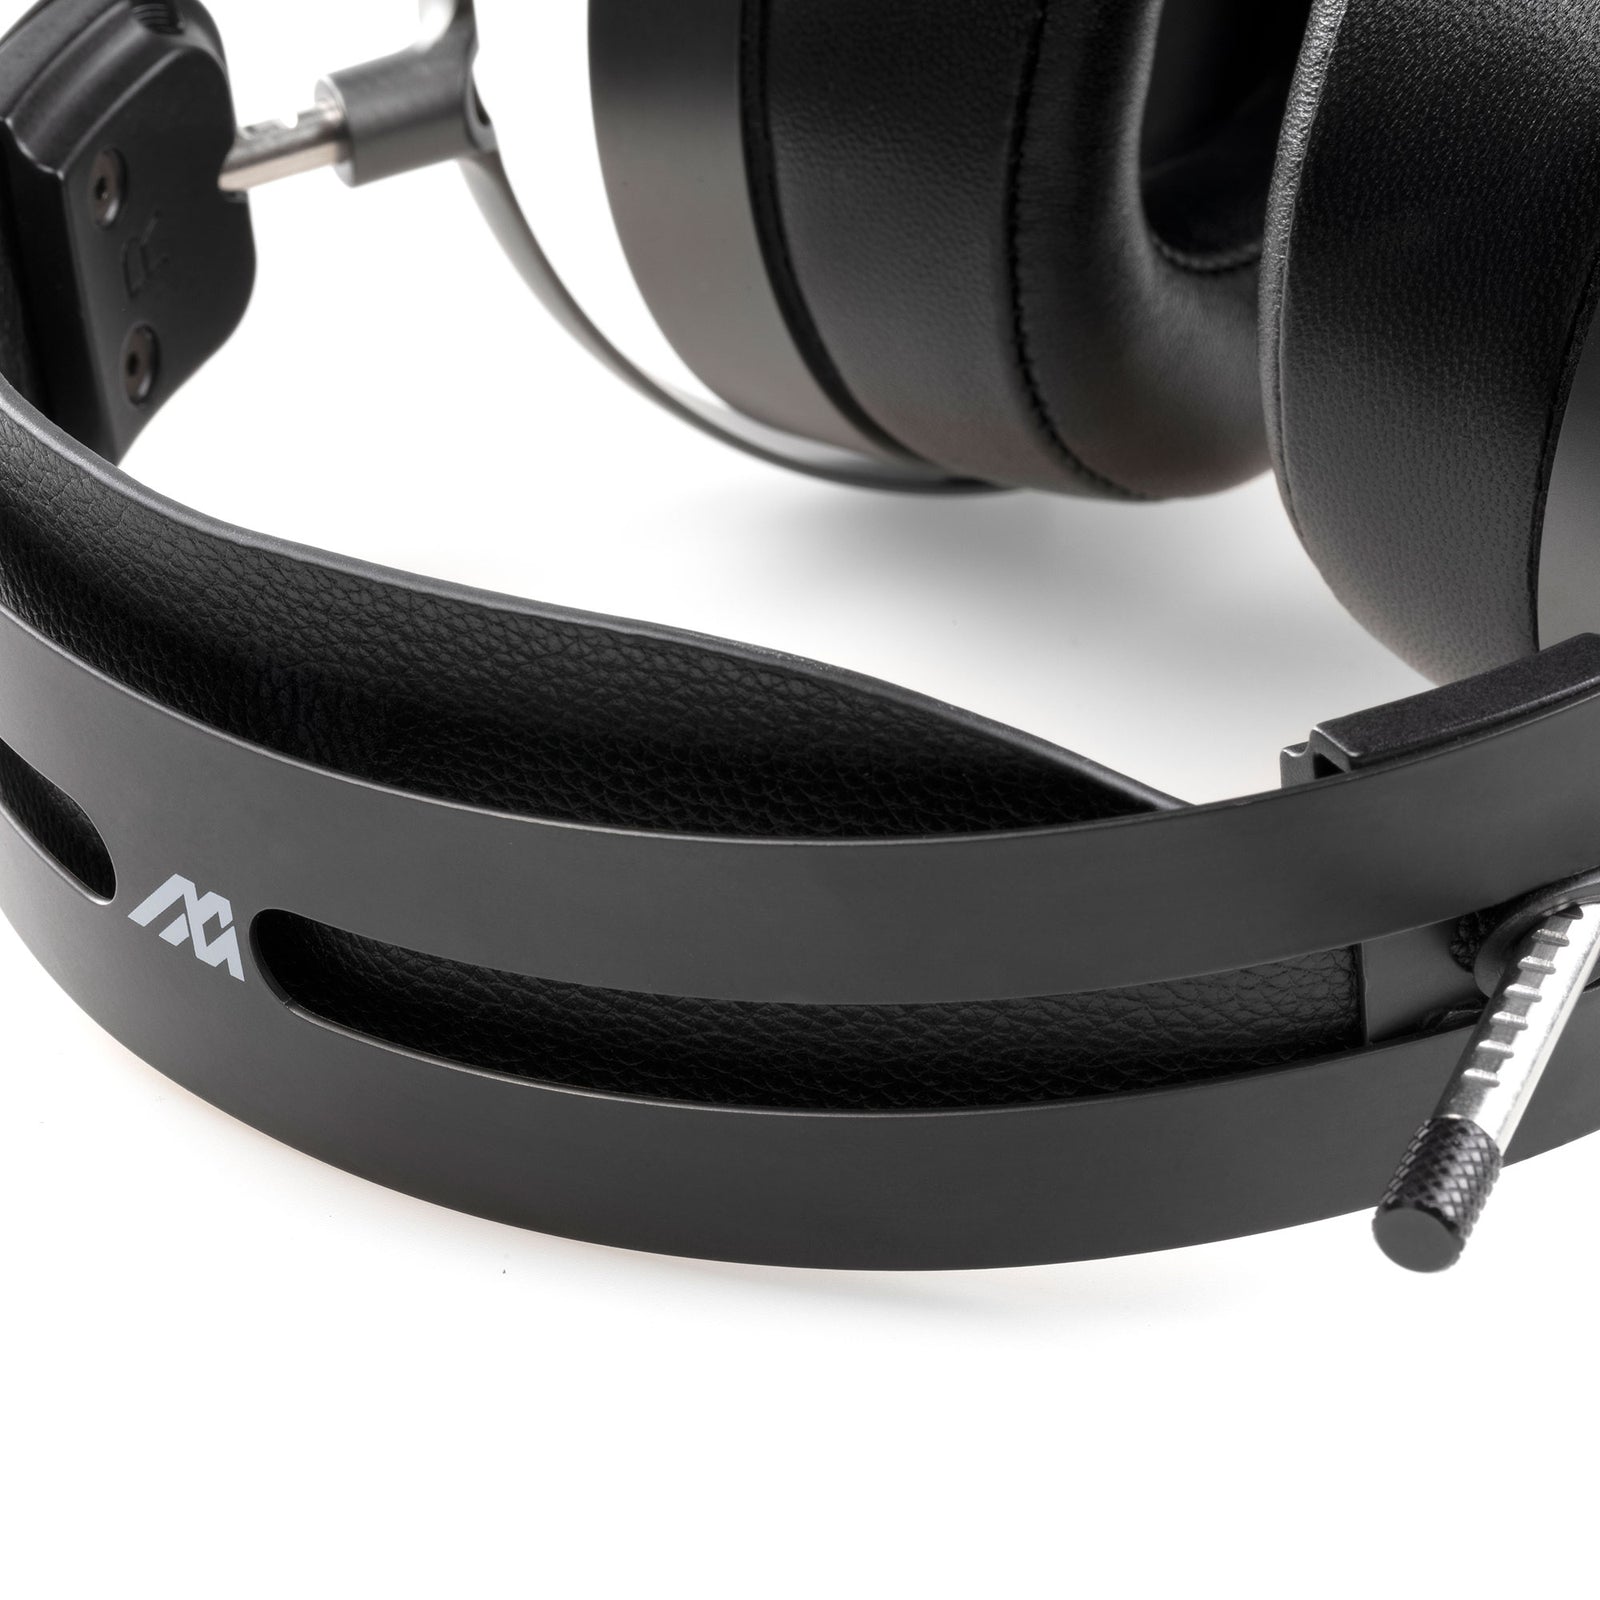 Audeze MM-500 Professional Studio Headphones for Mixing, Open-Back